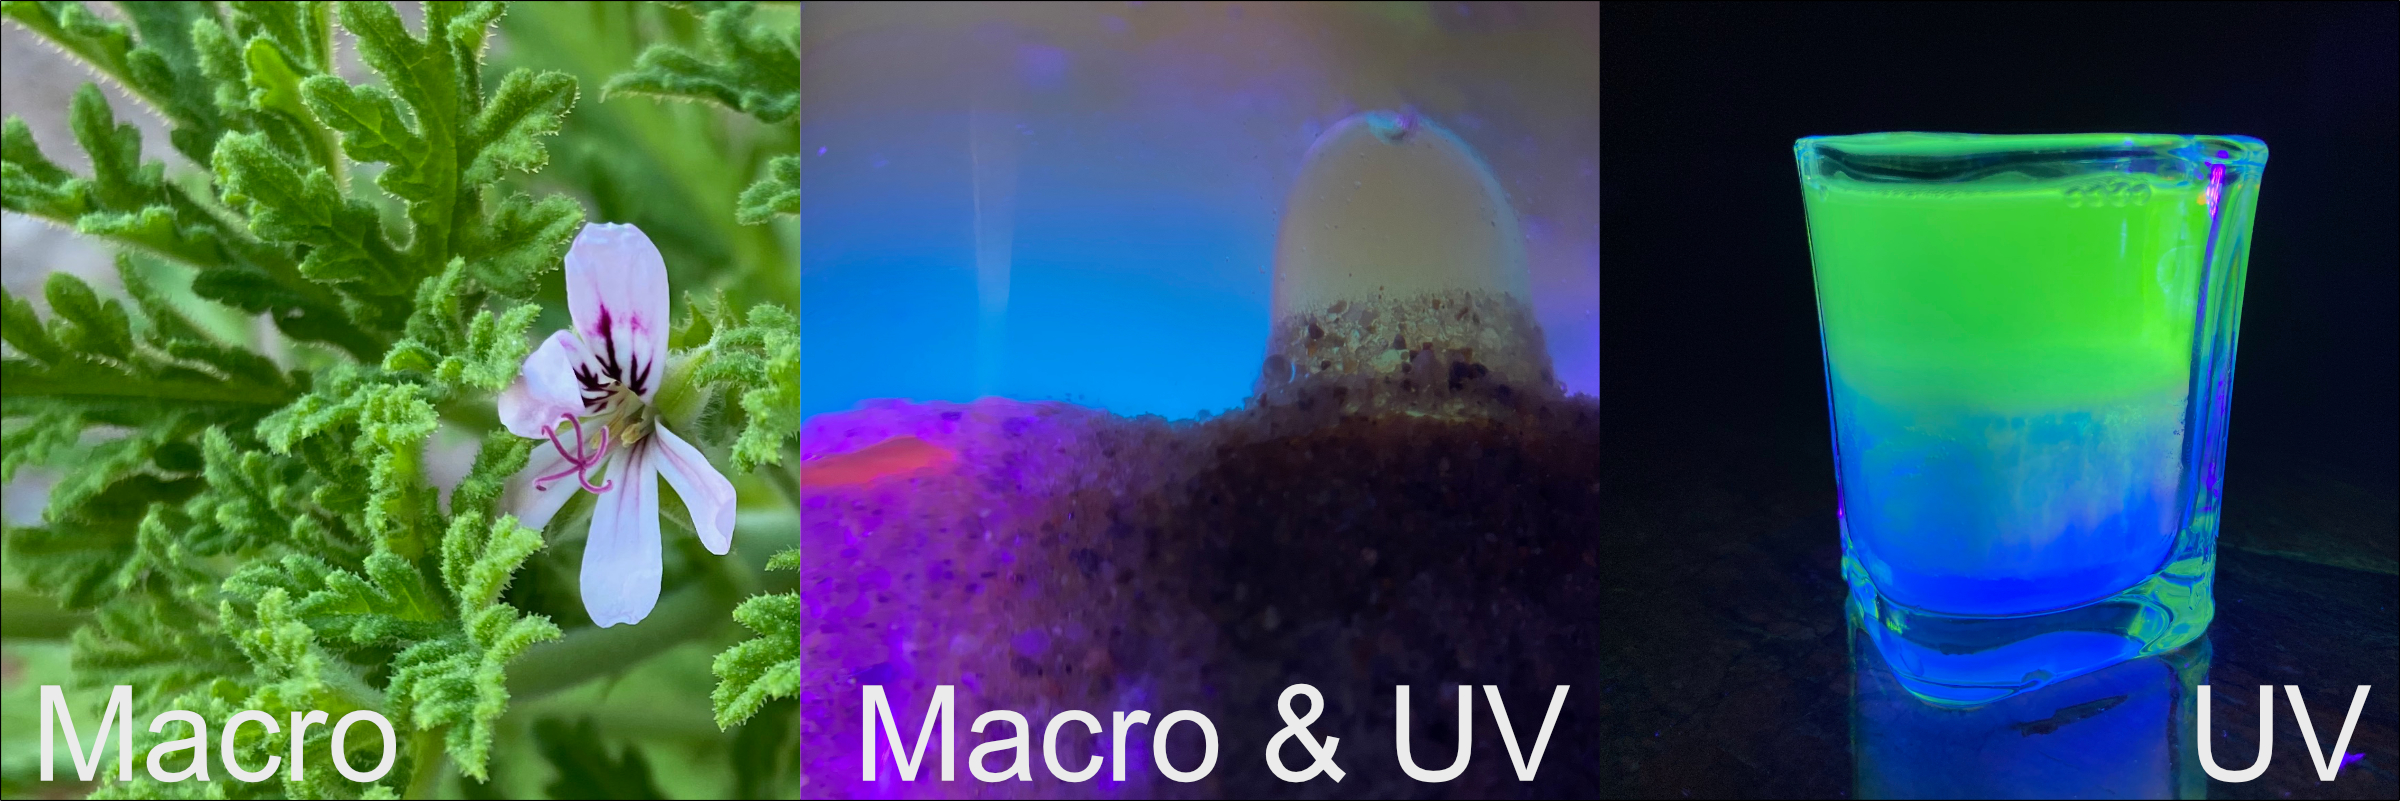 Macro_and_UV.jpg